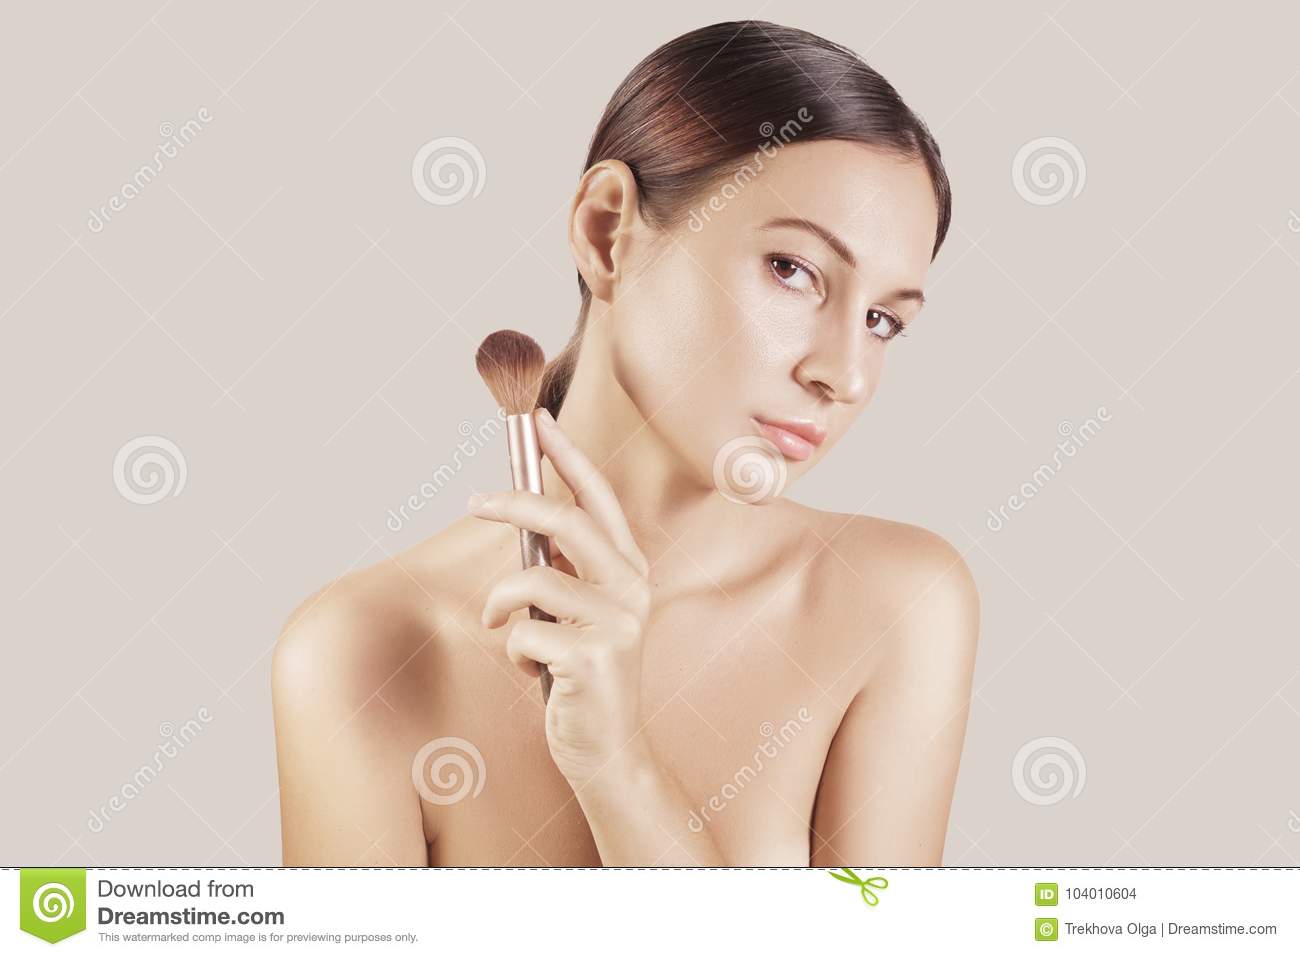 Big boobed brazilian woman nude